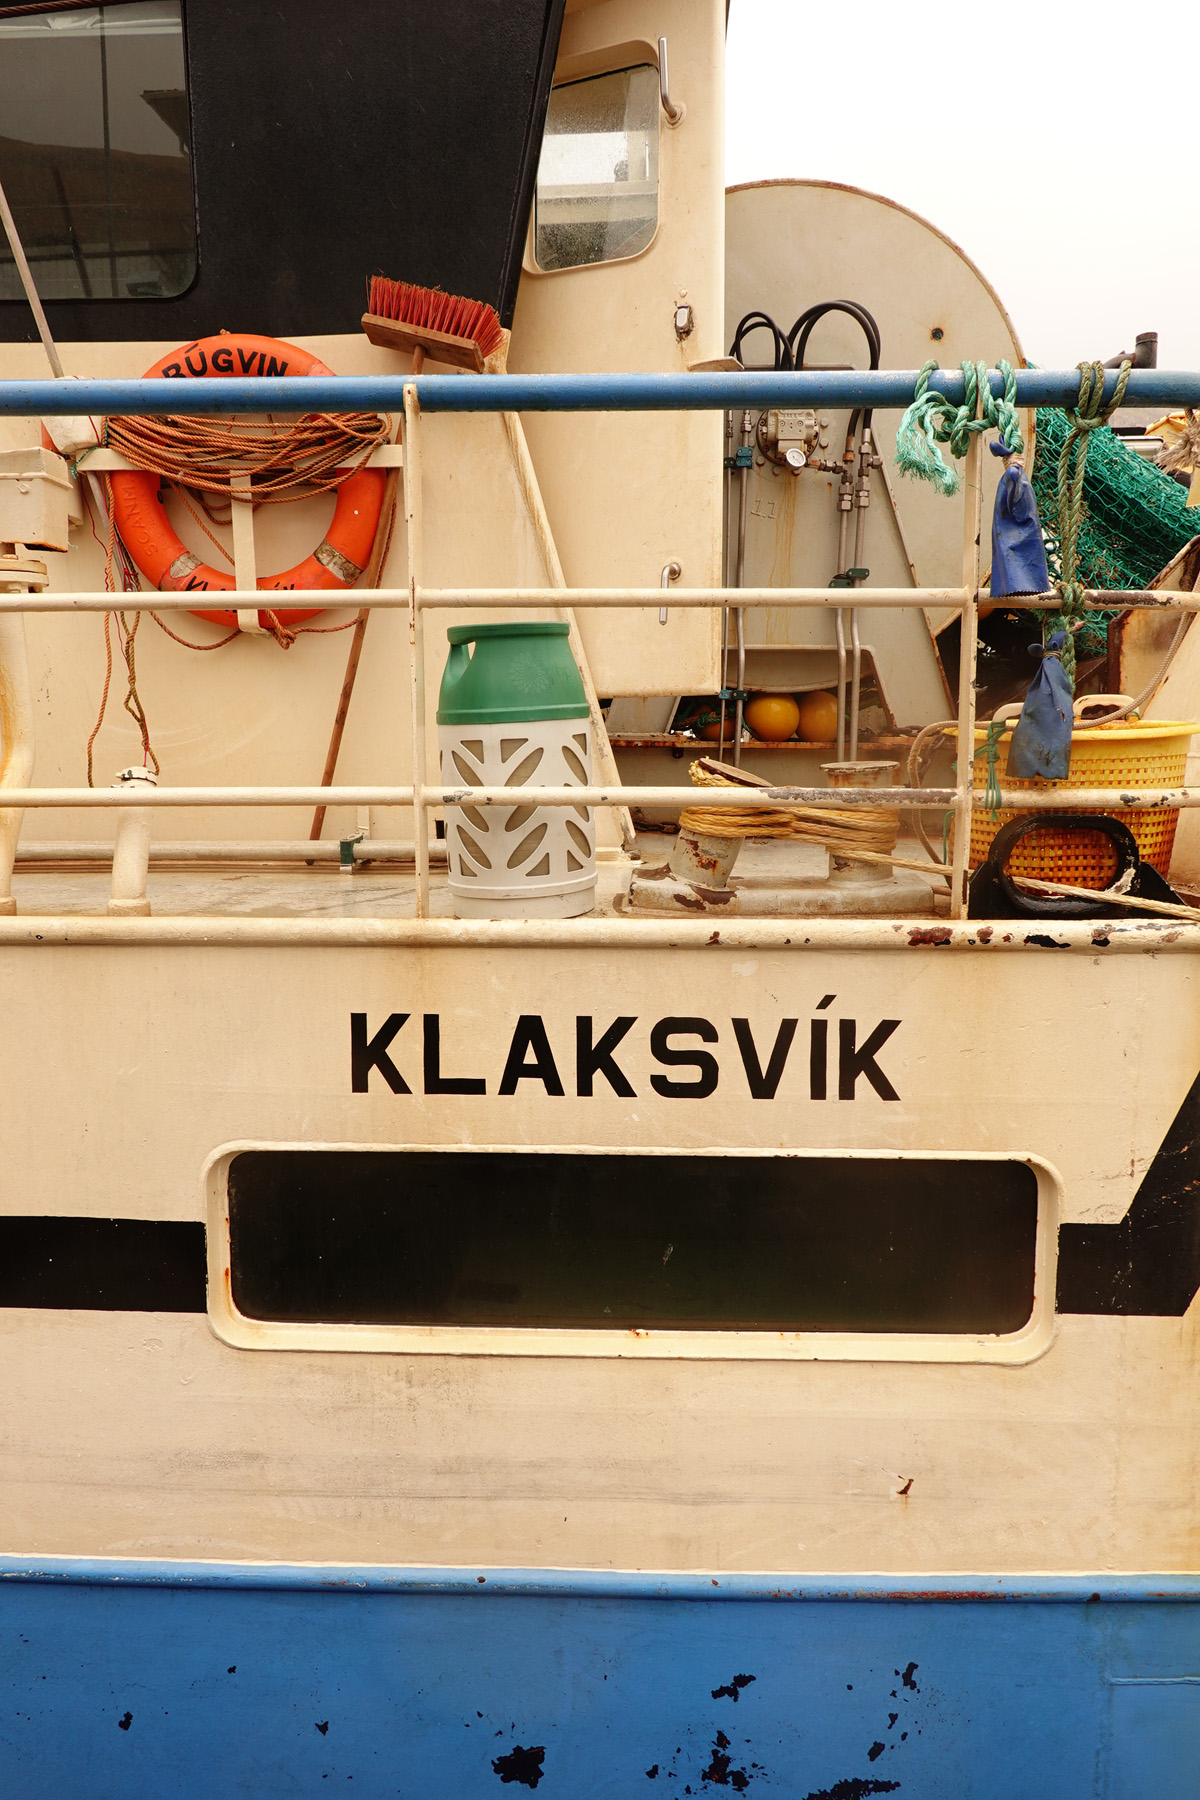 Mon voyage à Klaksvík sur l’île de Borðoy des Îles Féroé